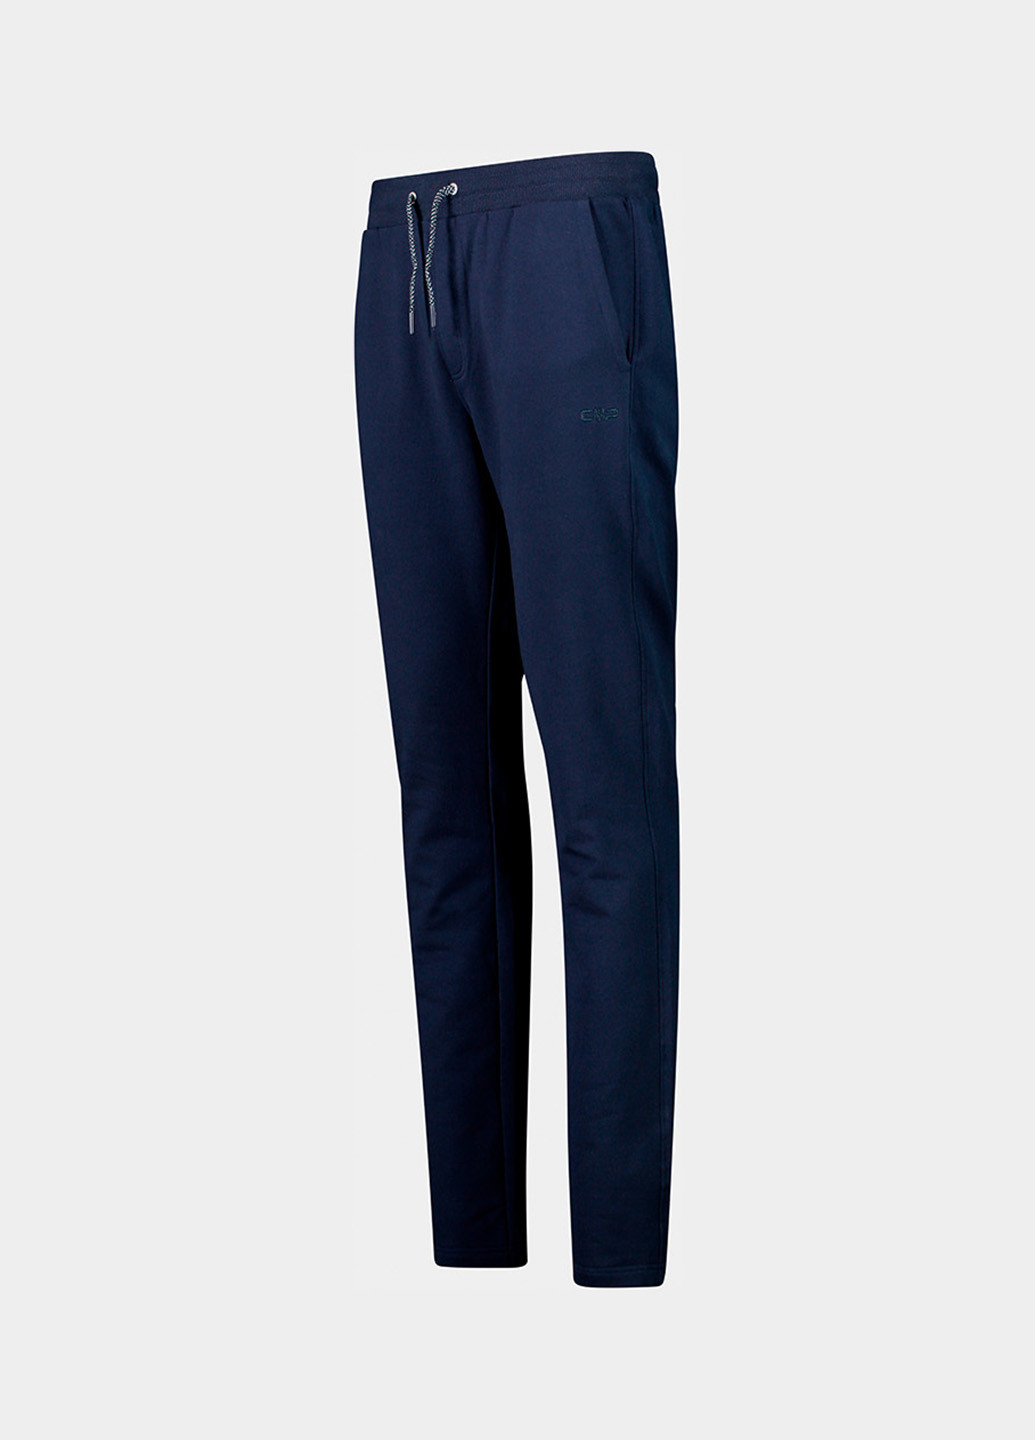 Темно-синие спортивные демисезонные джоггеры брюки CMP